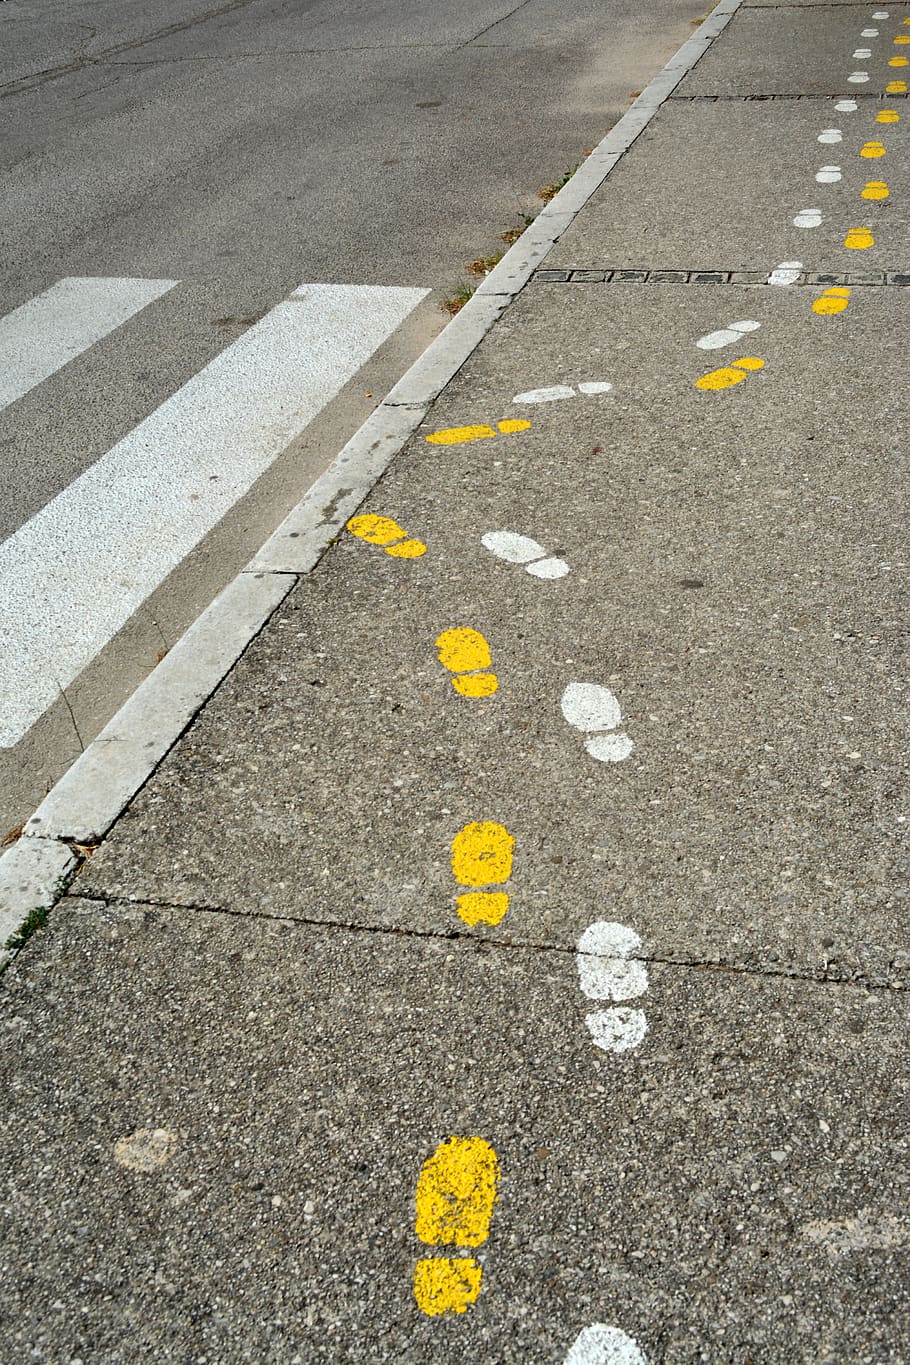 pegada, marca do pé, traçado, pista, forma, impressões amarelas, asfalto, passadeira de zebra, estrada, sinal